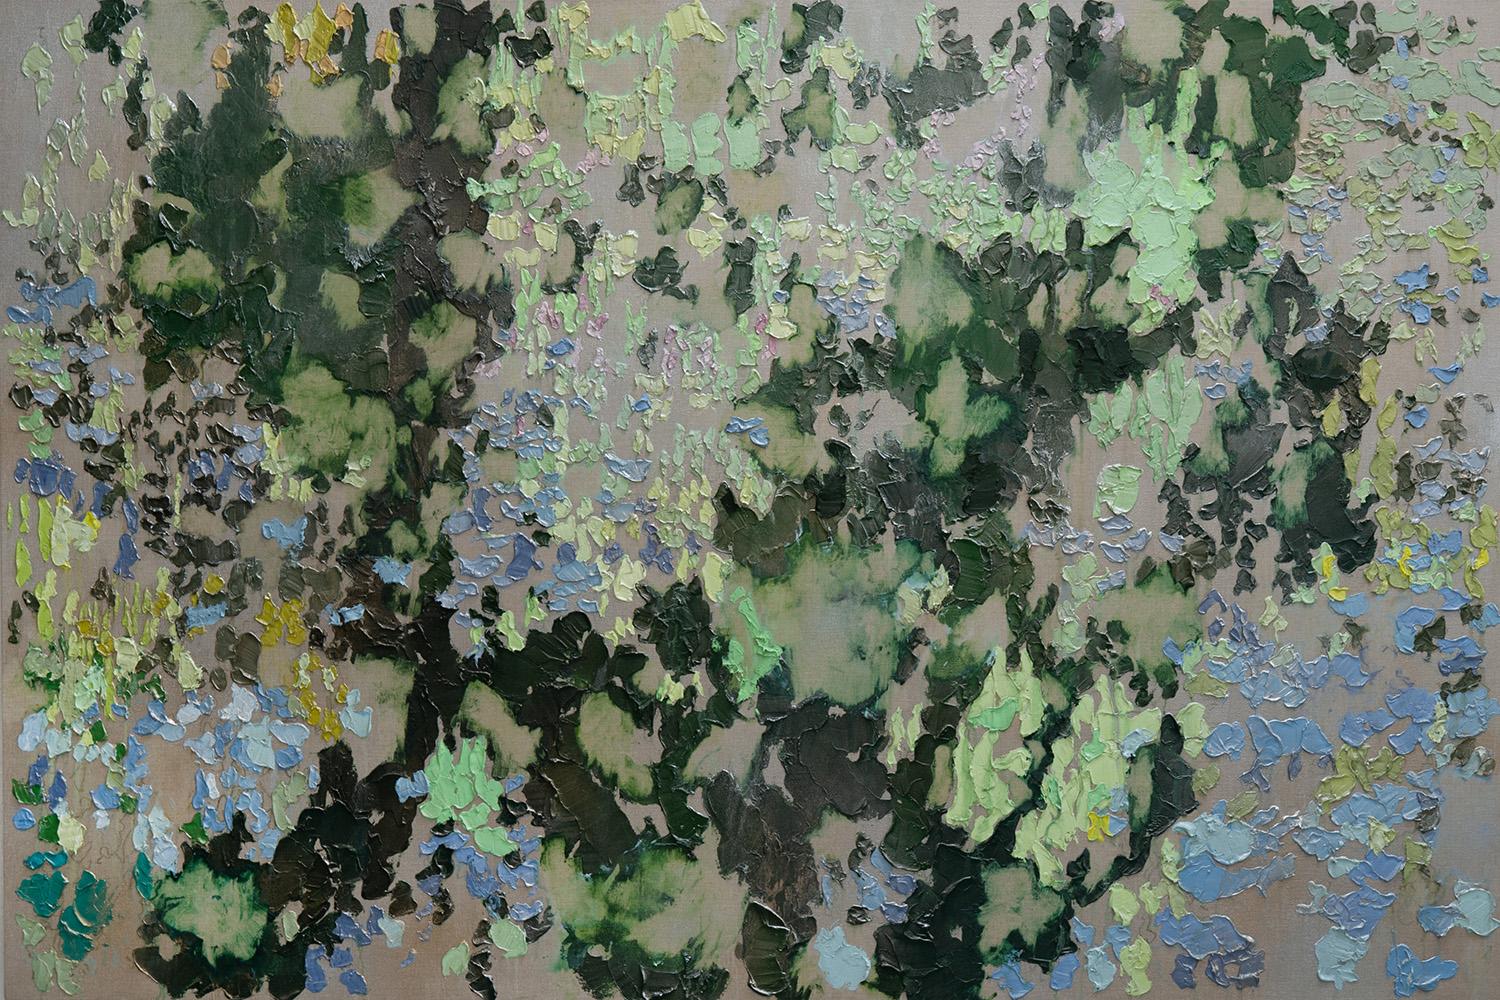 BRENDAN STUART BURNS Abstract Painting - Blink - Contemporary, Oil on linen by Brendan Burns